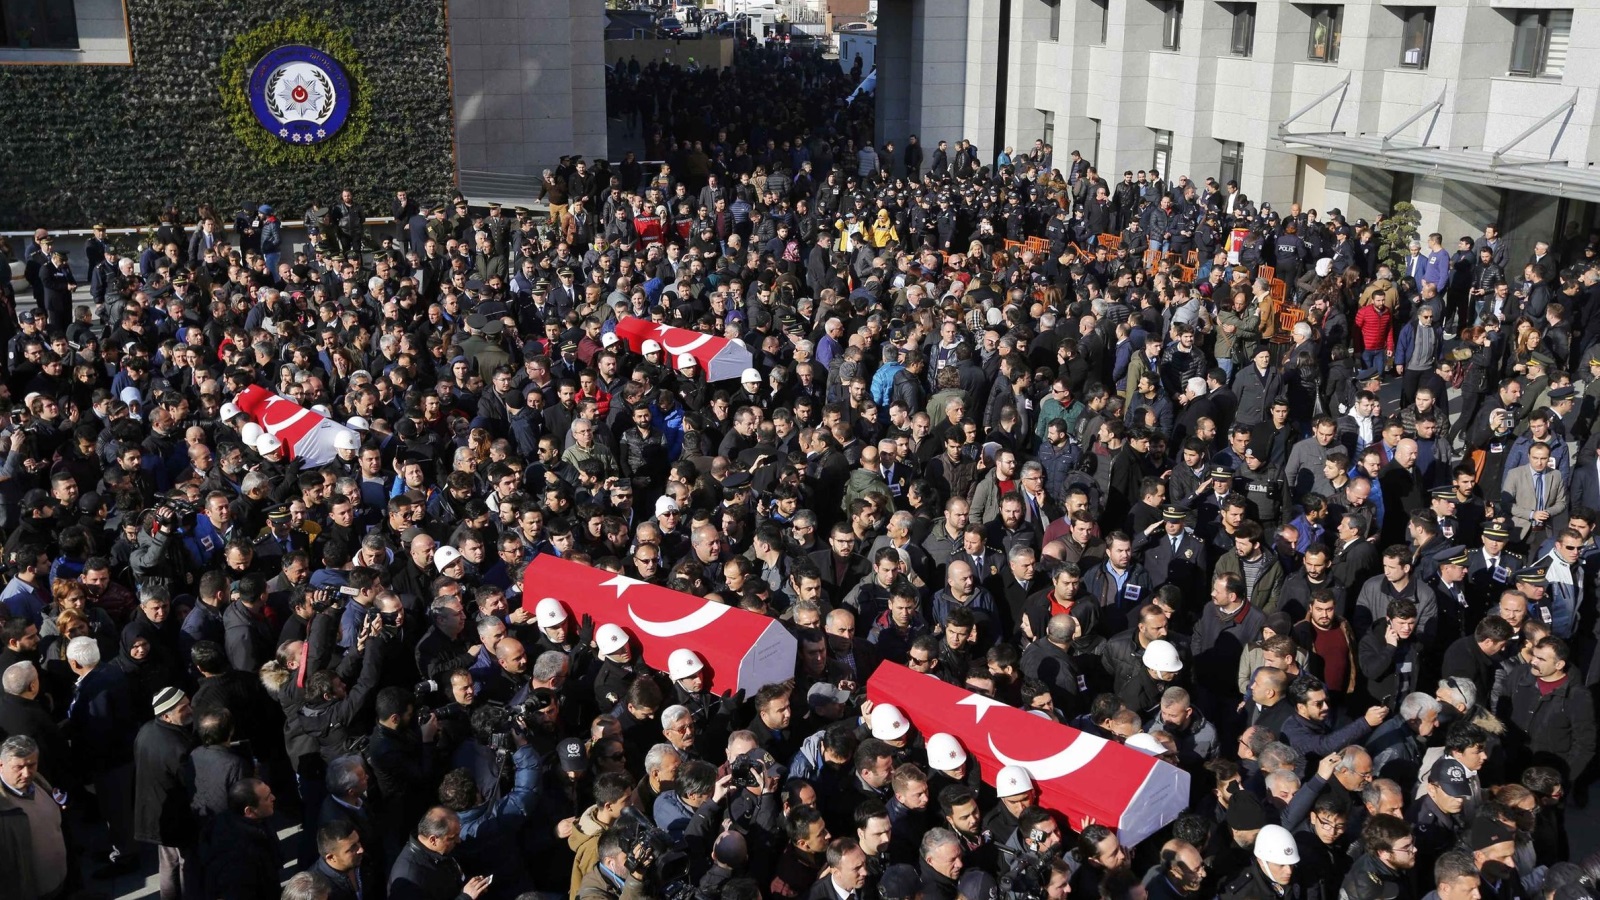 ‪الأتراك يشيعون ضحايا الهجوم المزدوج الذي ضرب مدينة إسطنبول‬ 
الأتراك يشيعون ضحايا الهجوم المزدوج الذي ضرب مدينة إسطنبول (رويترز)
 
